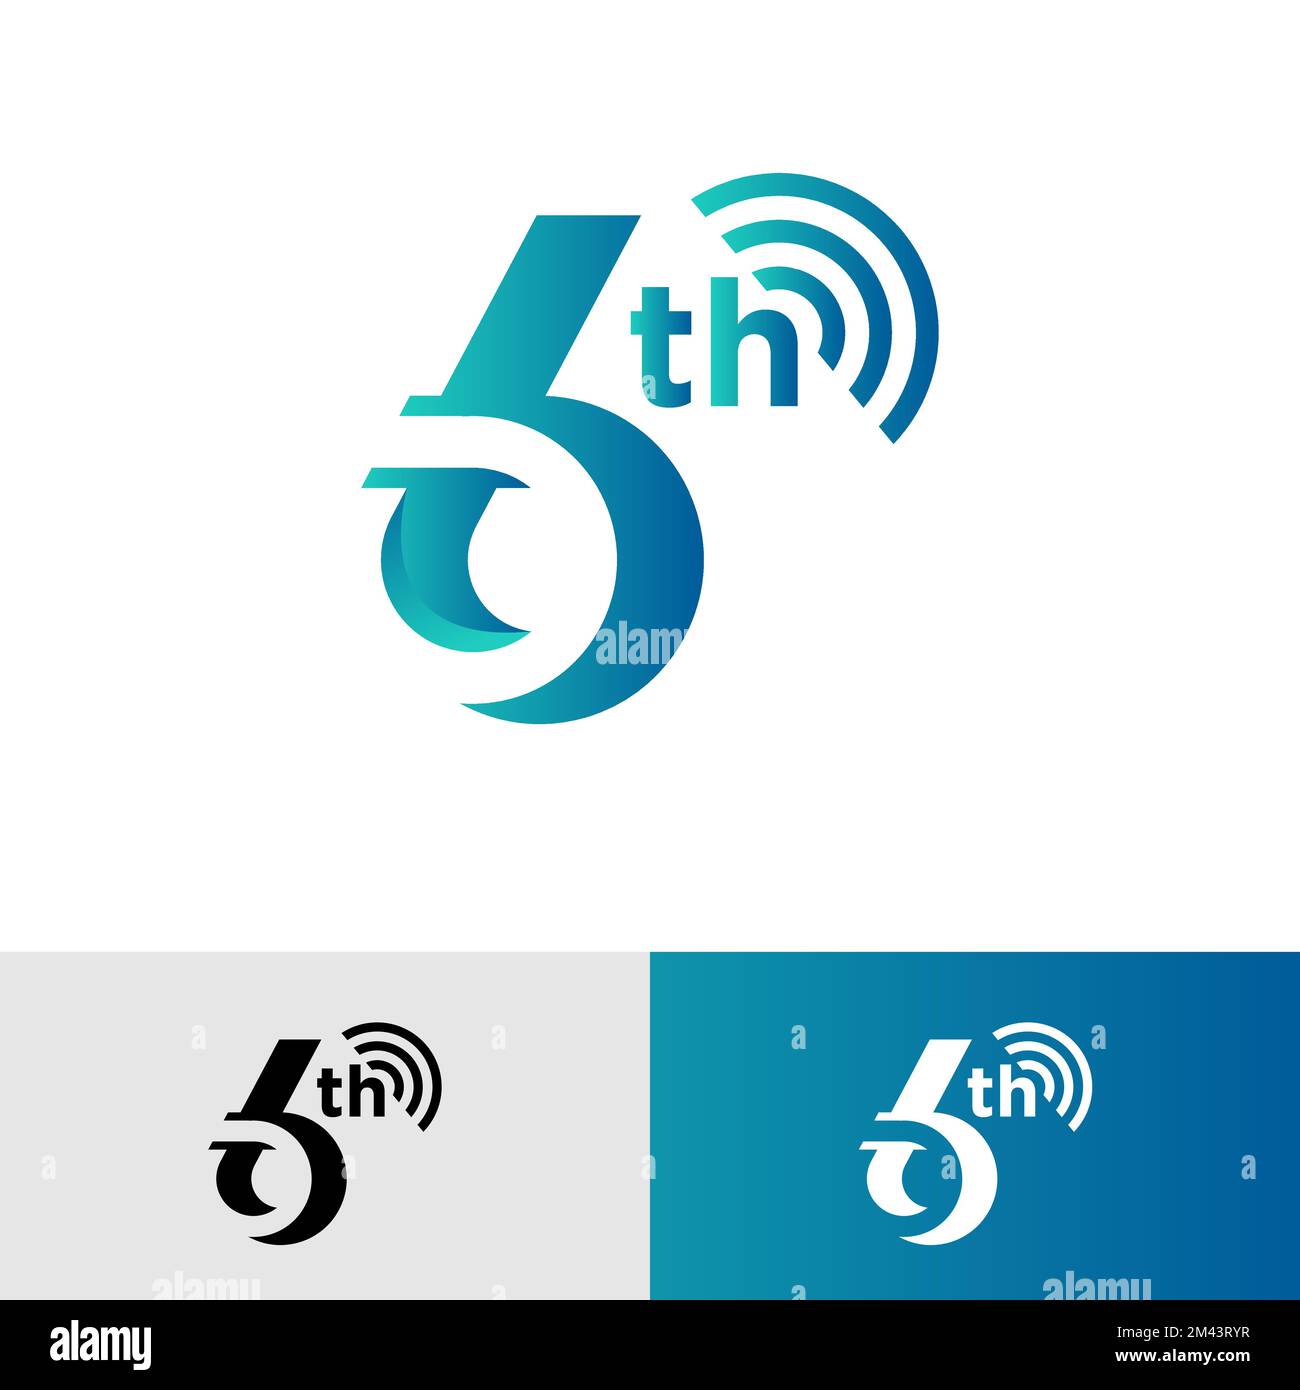 6 anniversaire célébration logo design concept.EPS 10 Illustration de Vecteur